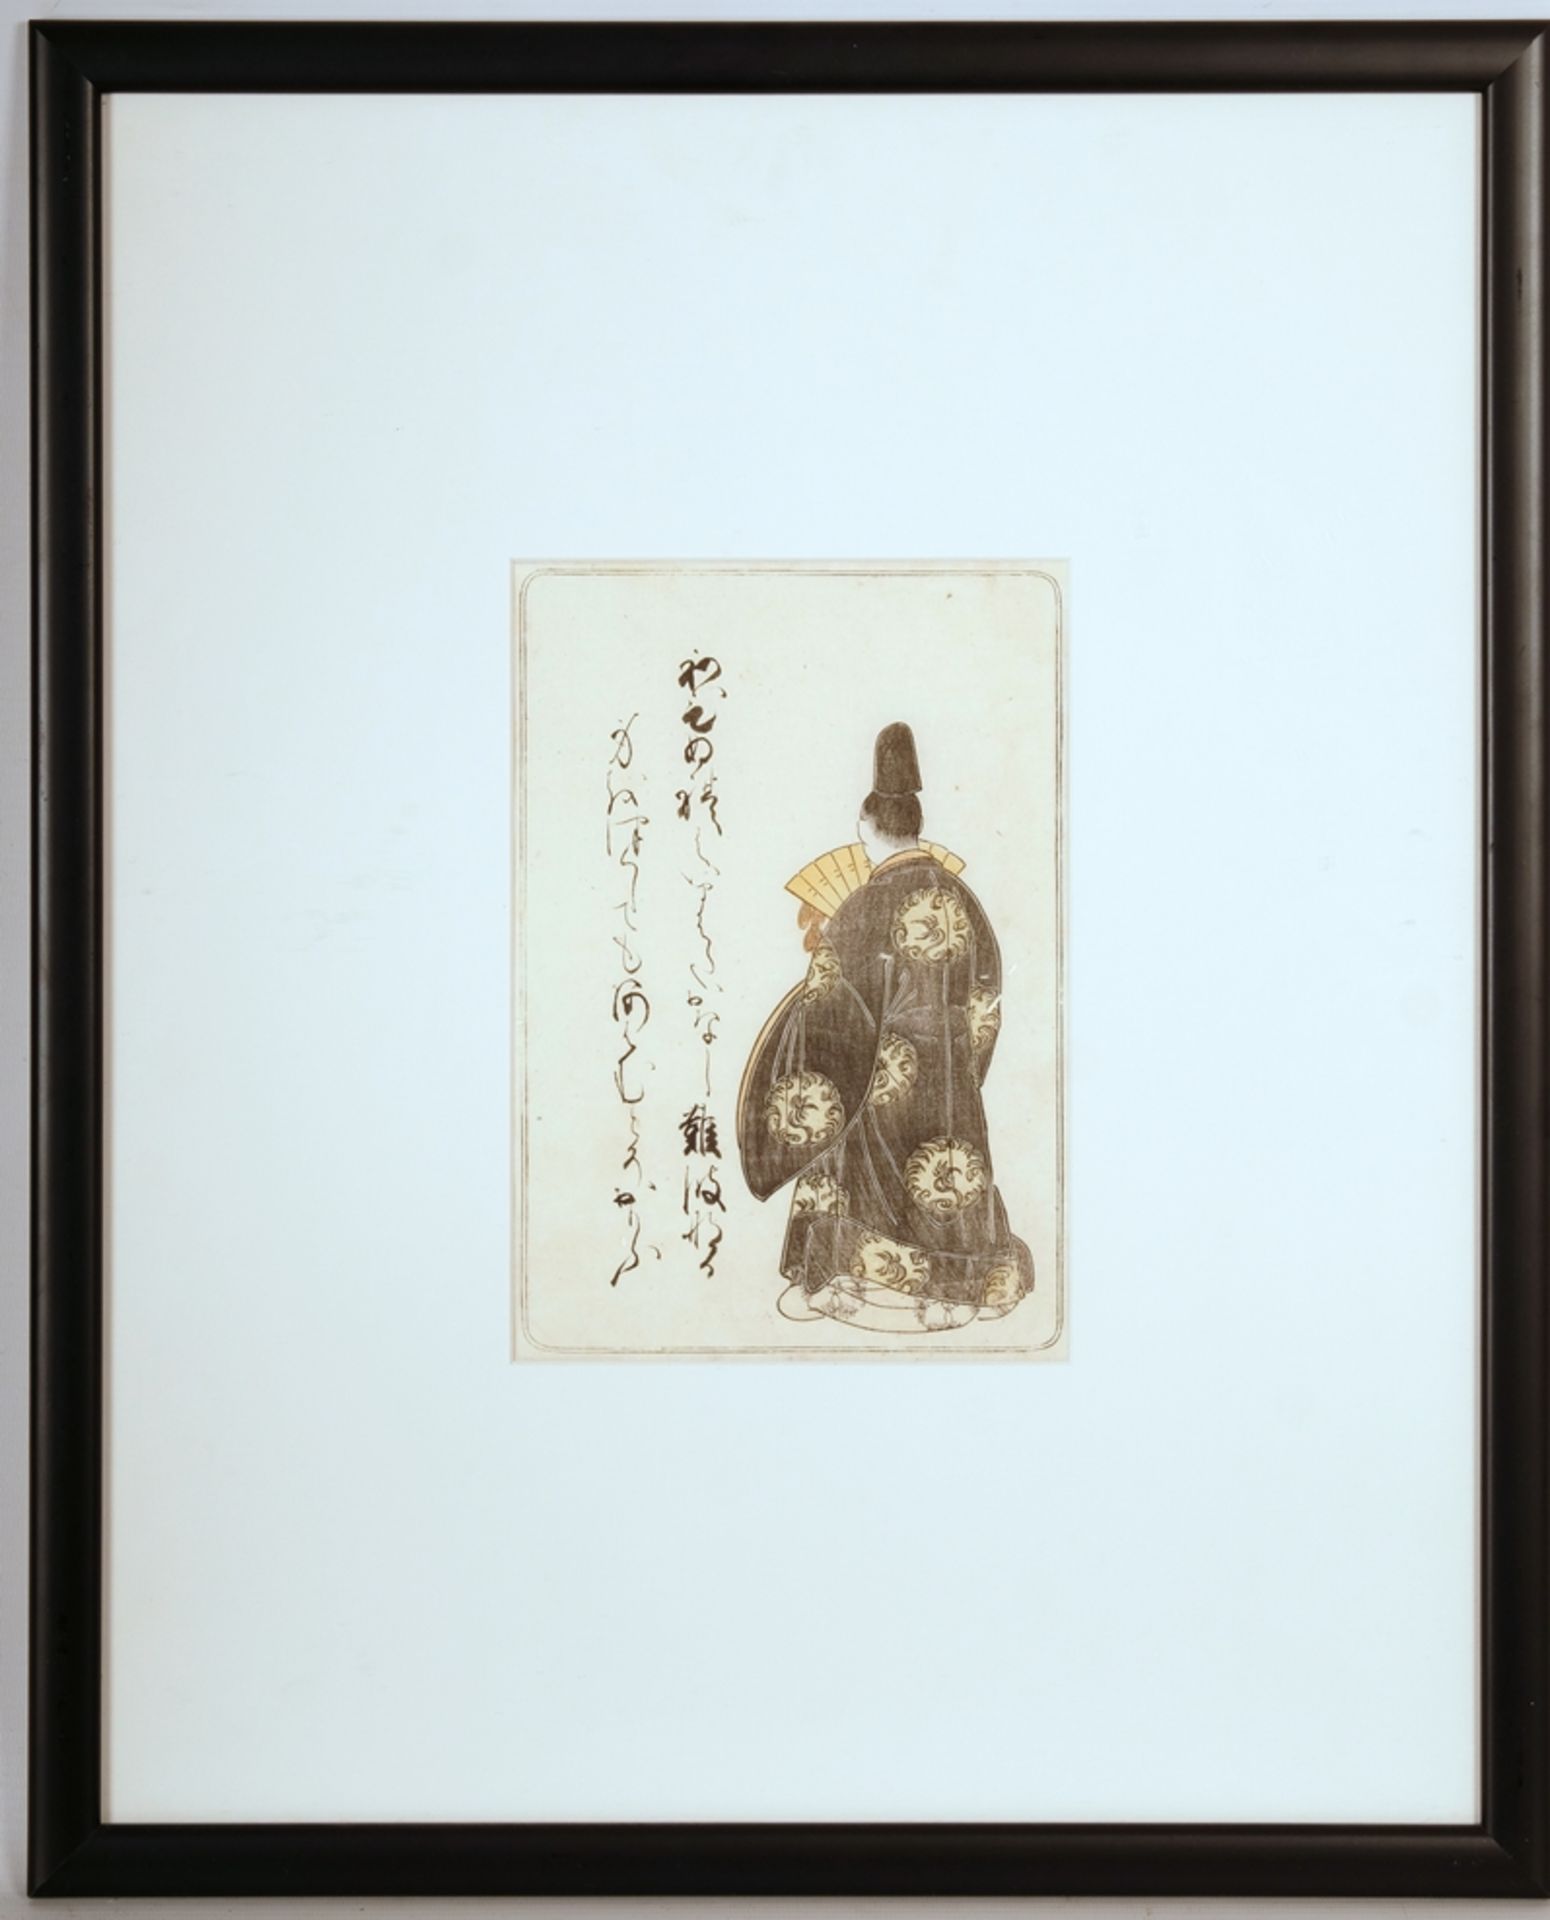 Shunsho, Katsukawa (1726-1792) "Minamoto no Shigeyuki", c. 1774, colour woodcut. - Image 2 of 2